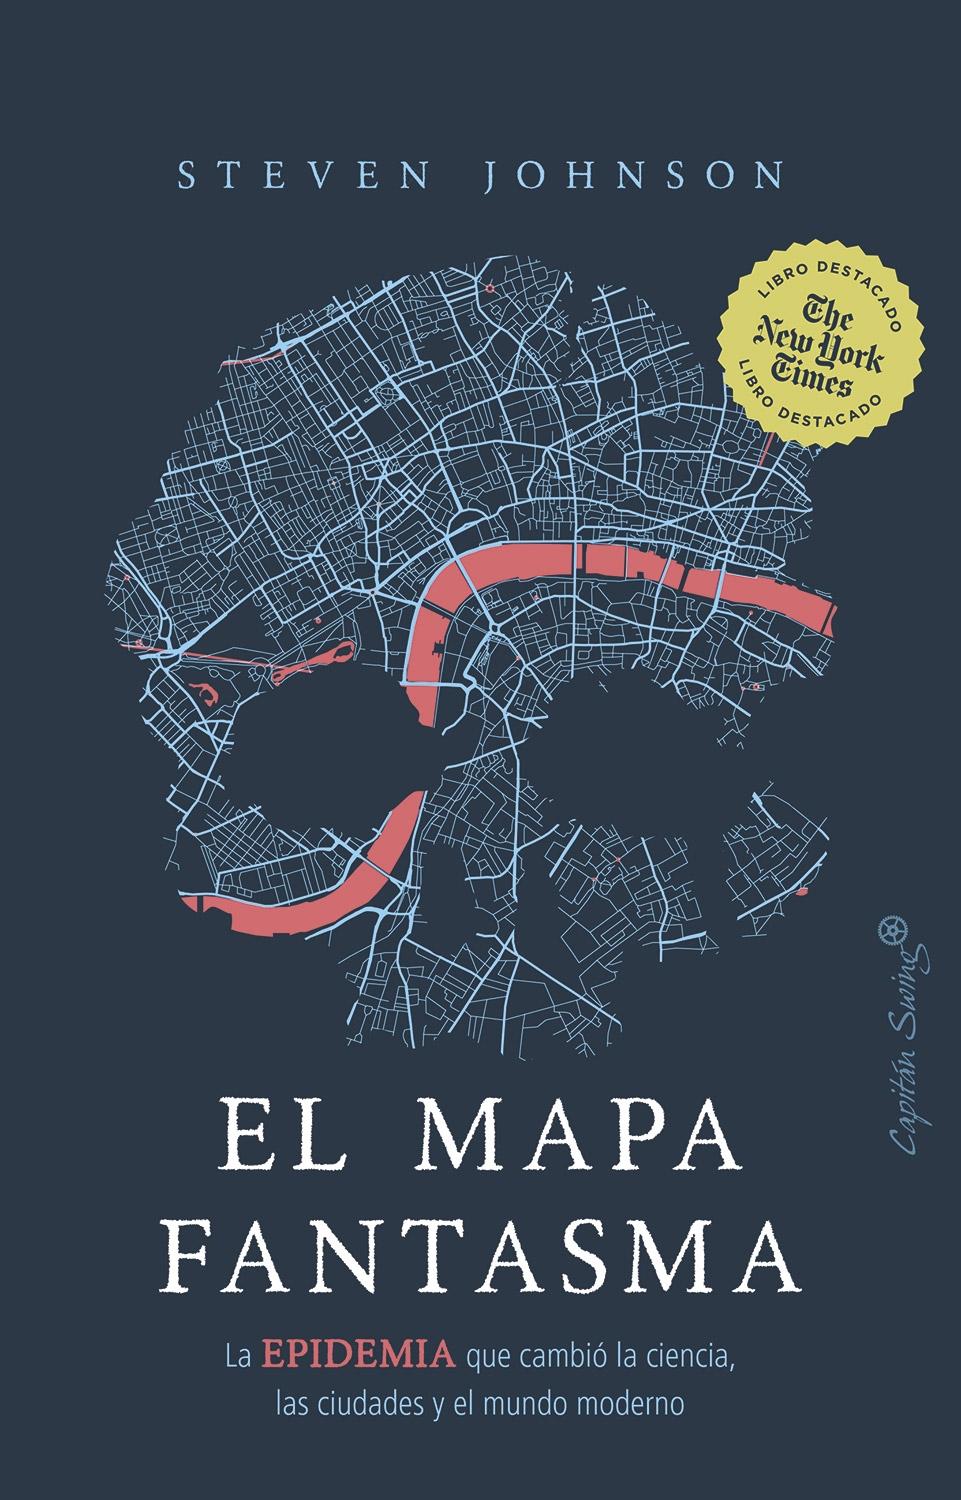 El mapa fantasma "La epidemia que cambió la ciencia, las ciudades y el mundo moderno"